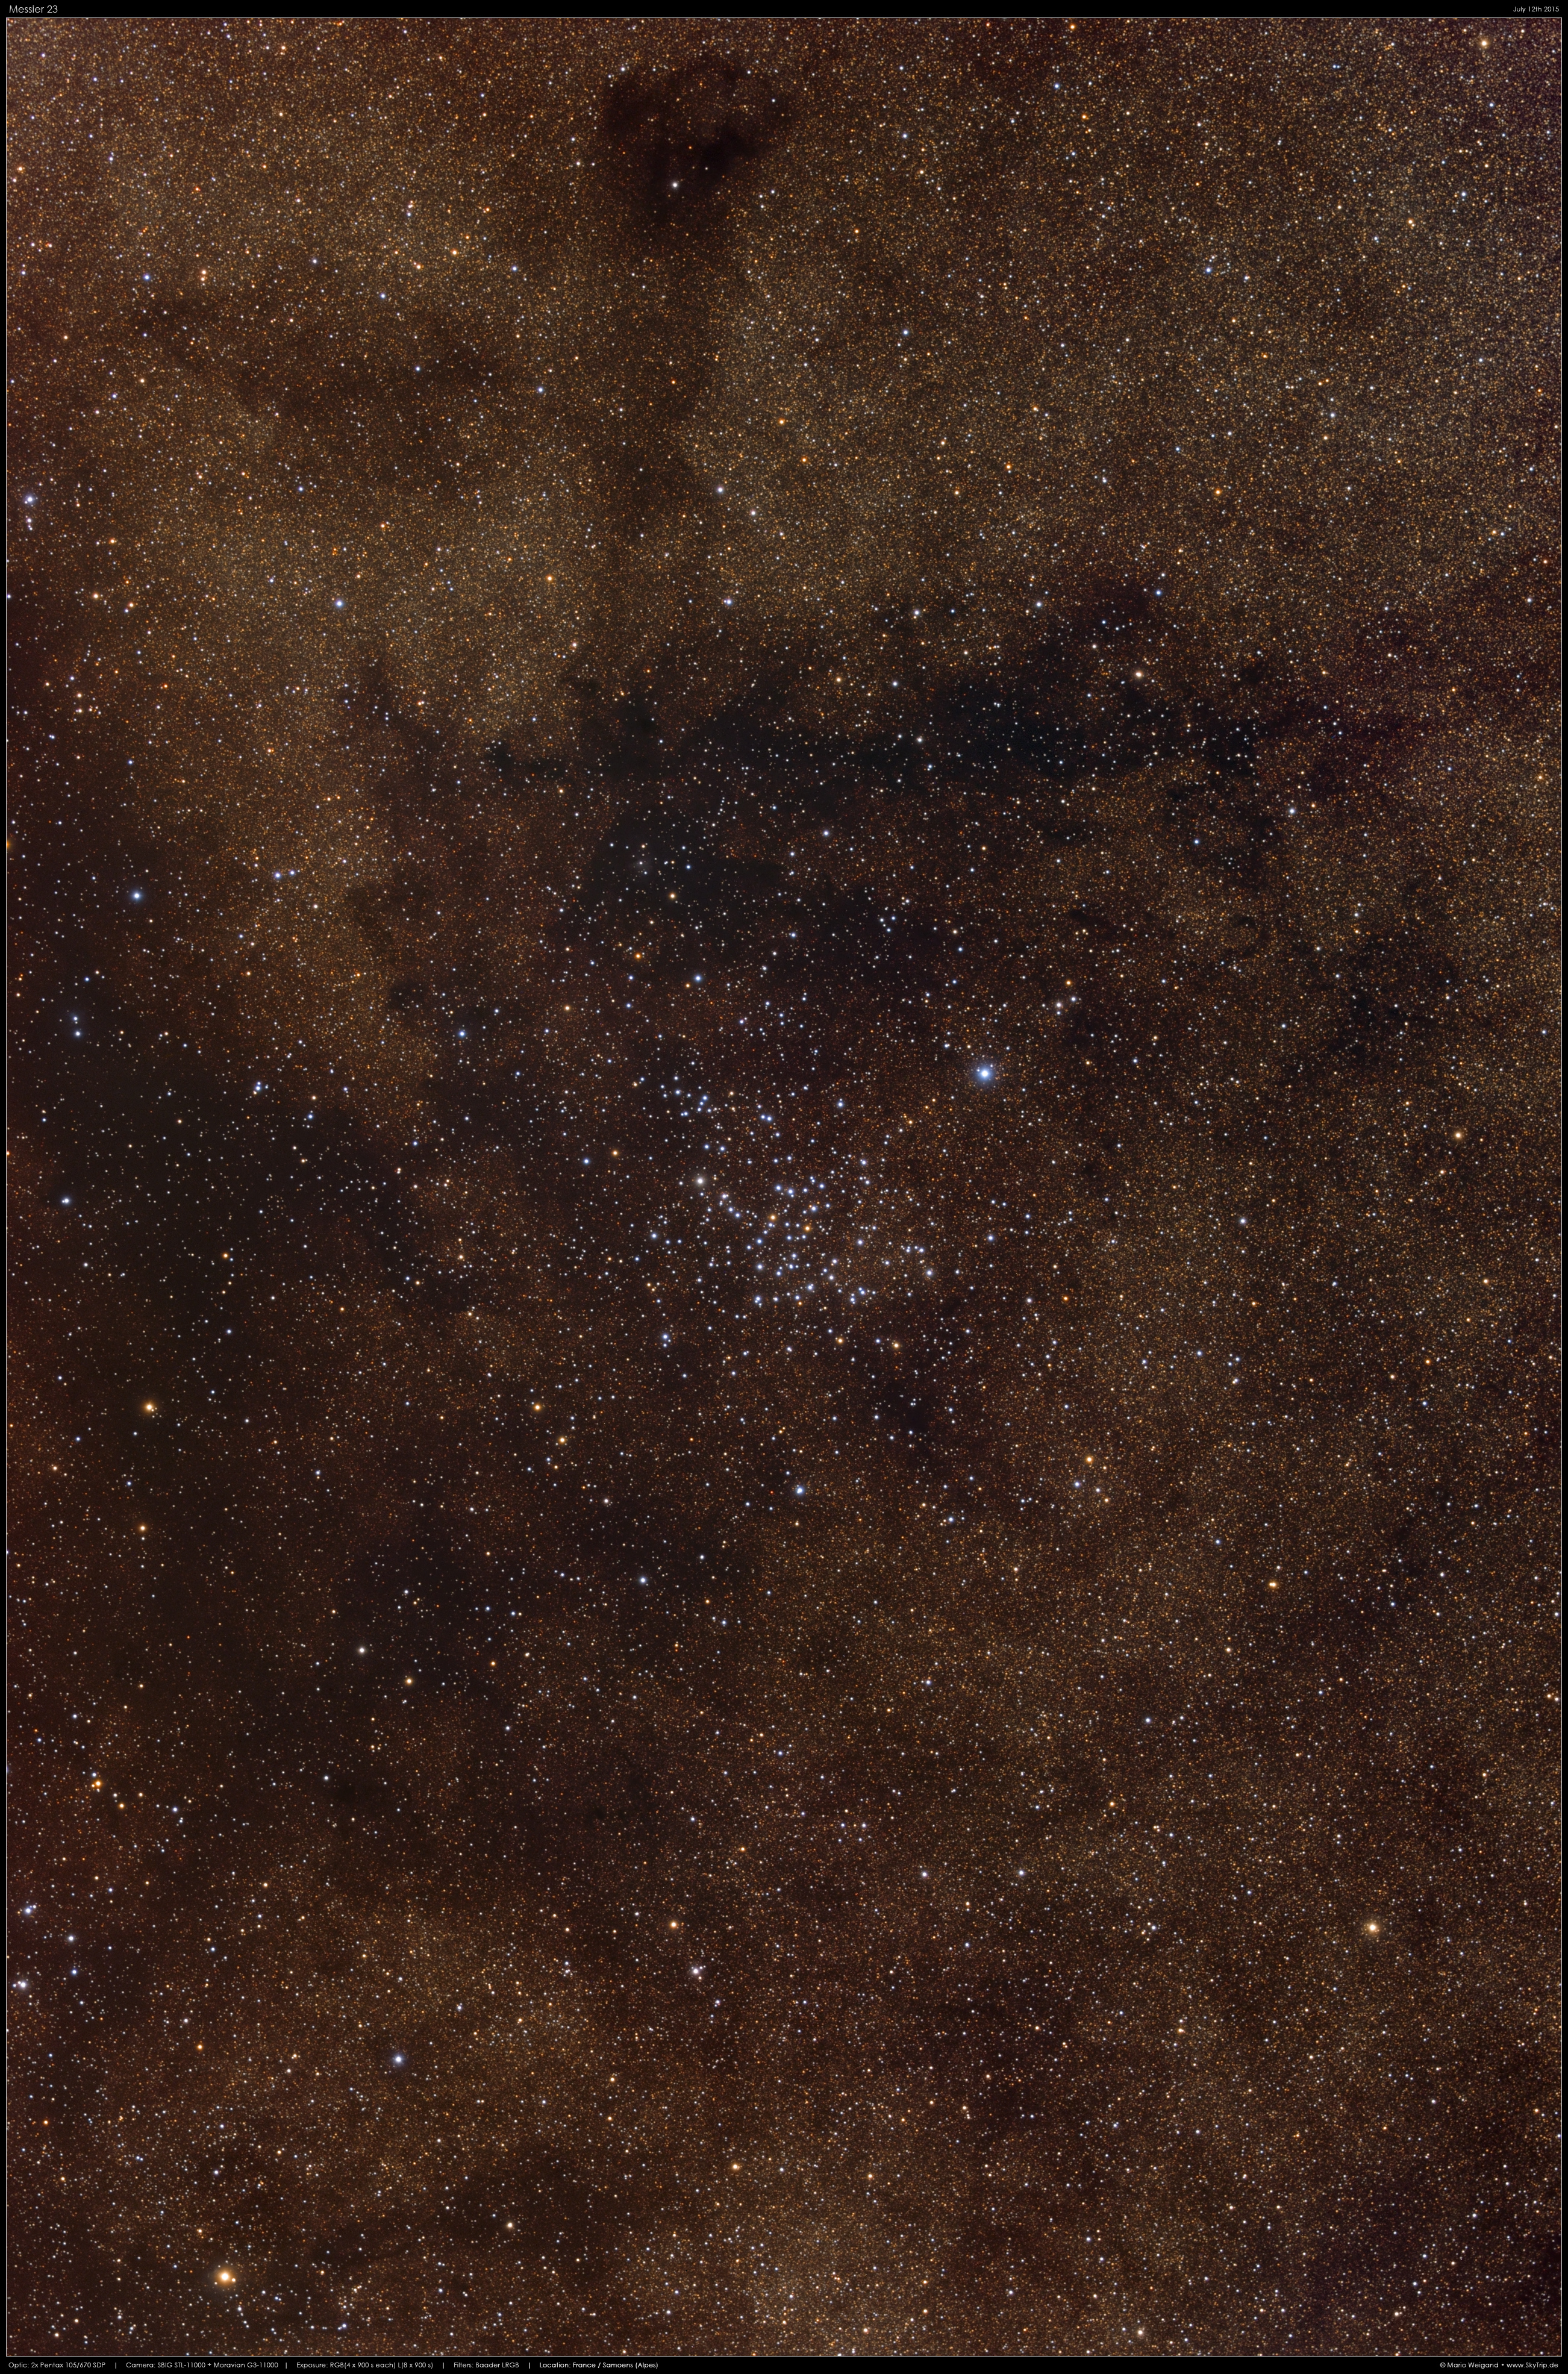 Offener Sternhaufen Messier 23